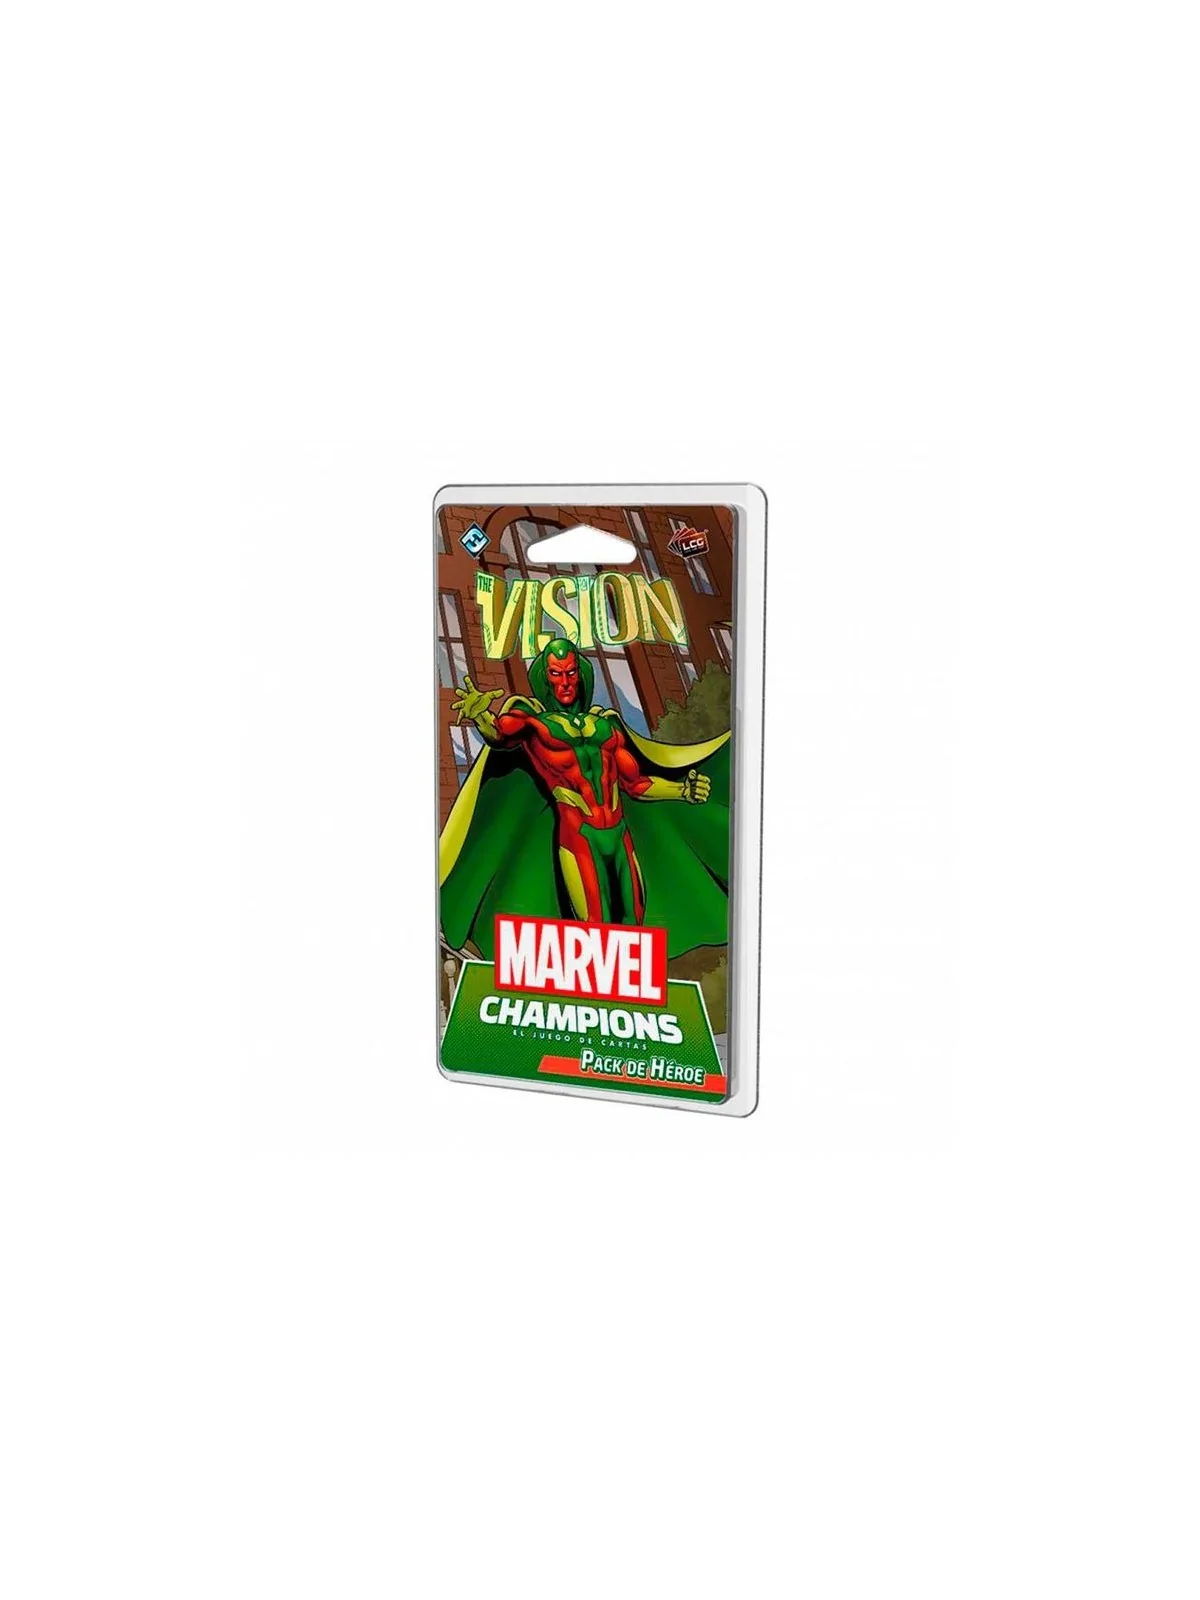 Comprar Marvel Champions: Vision barato al mejor precio 14,10 € de Fan